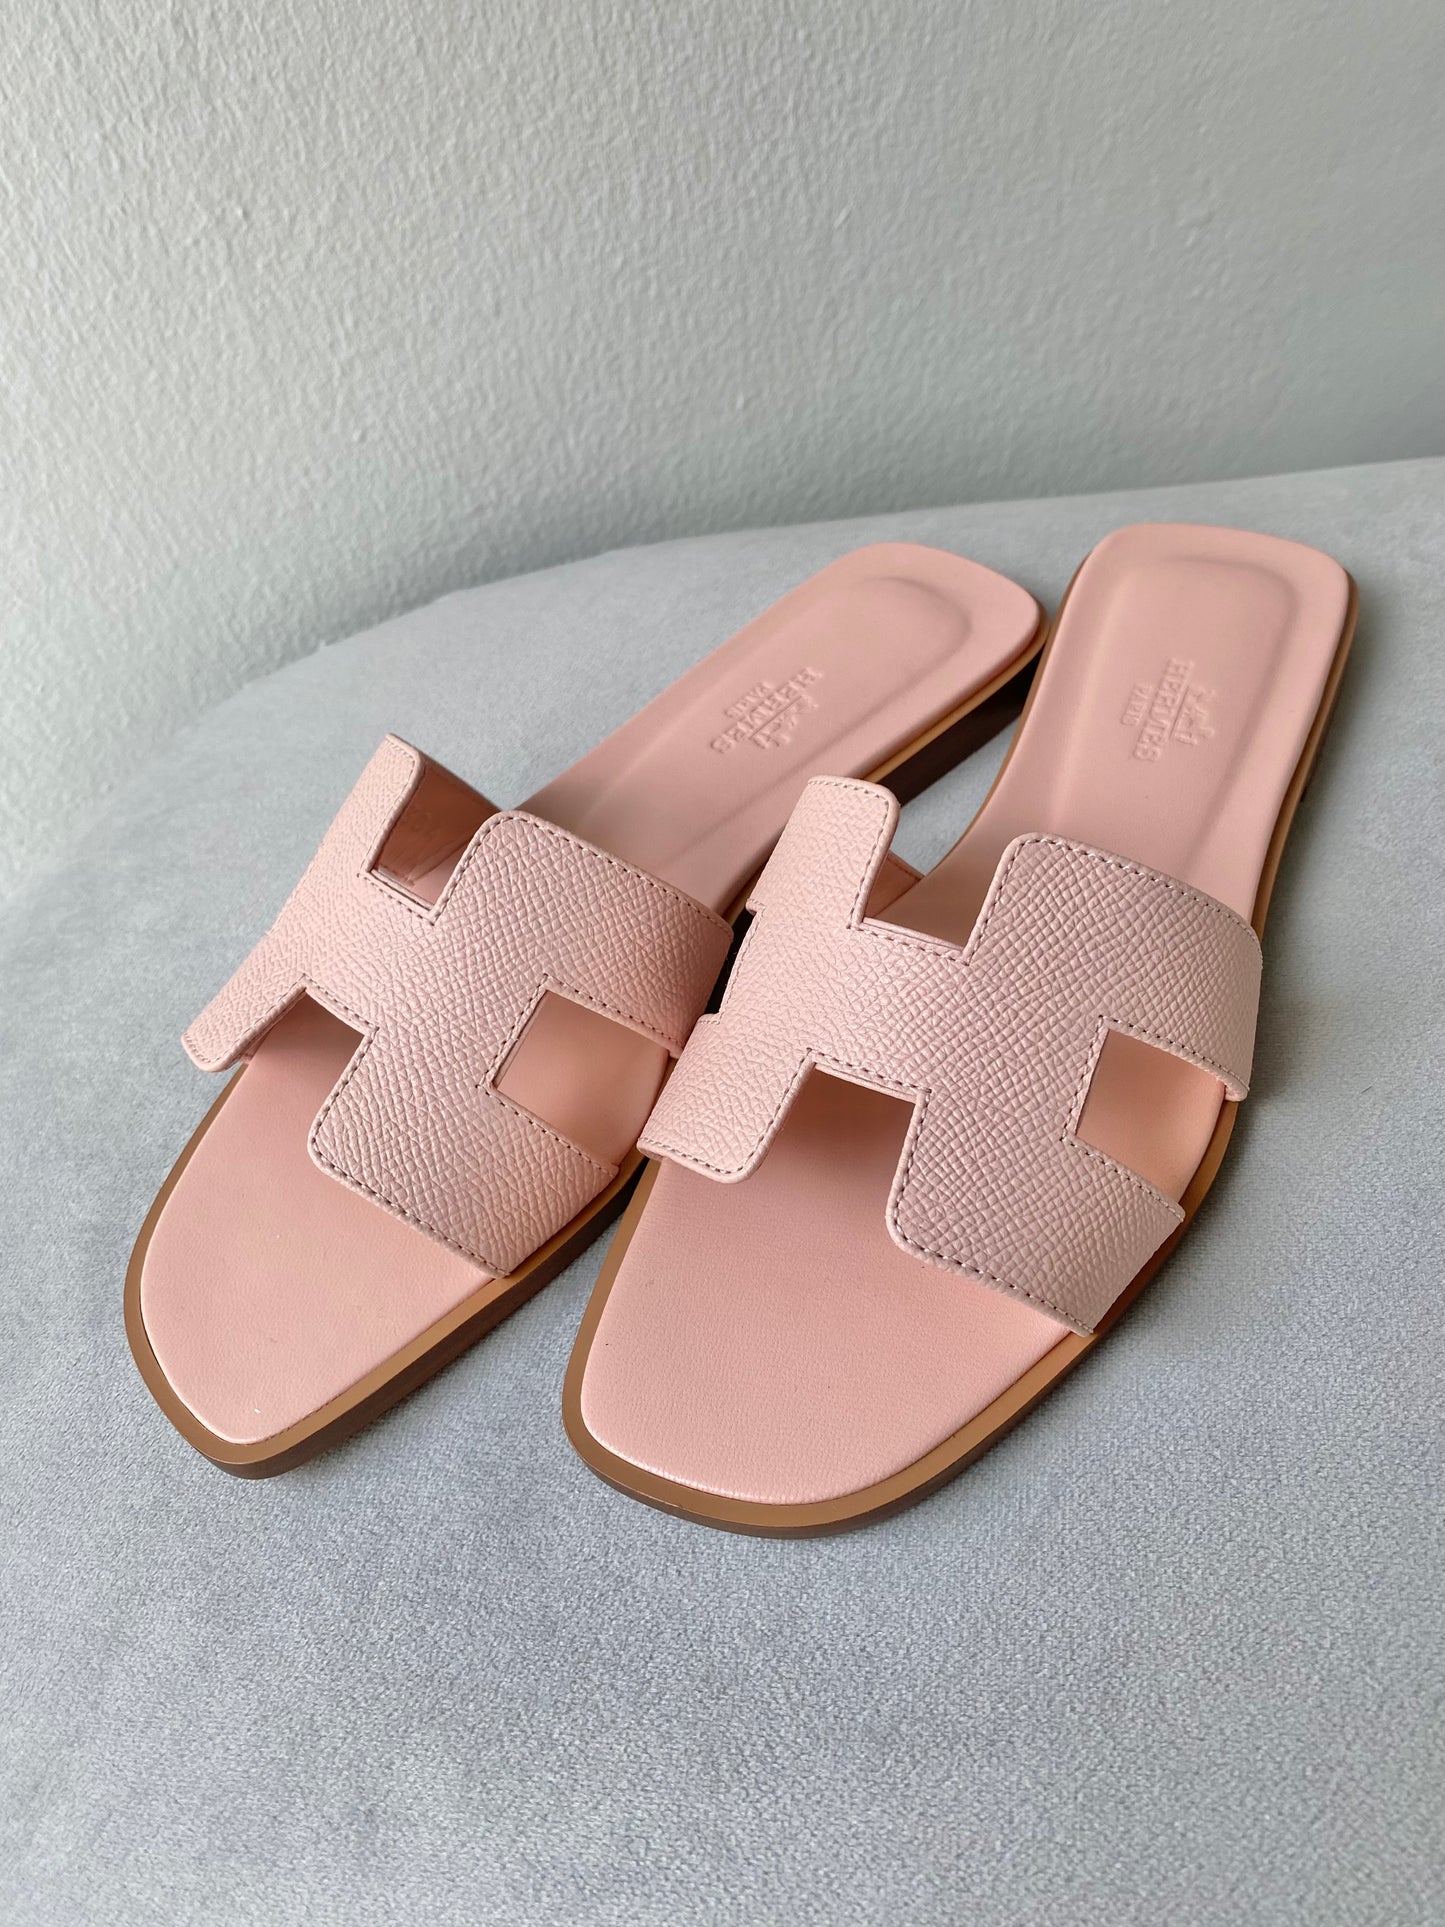 HERMÈS Oran Sandals in Rose Pale